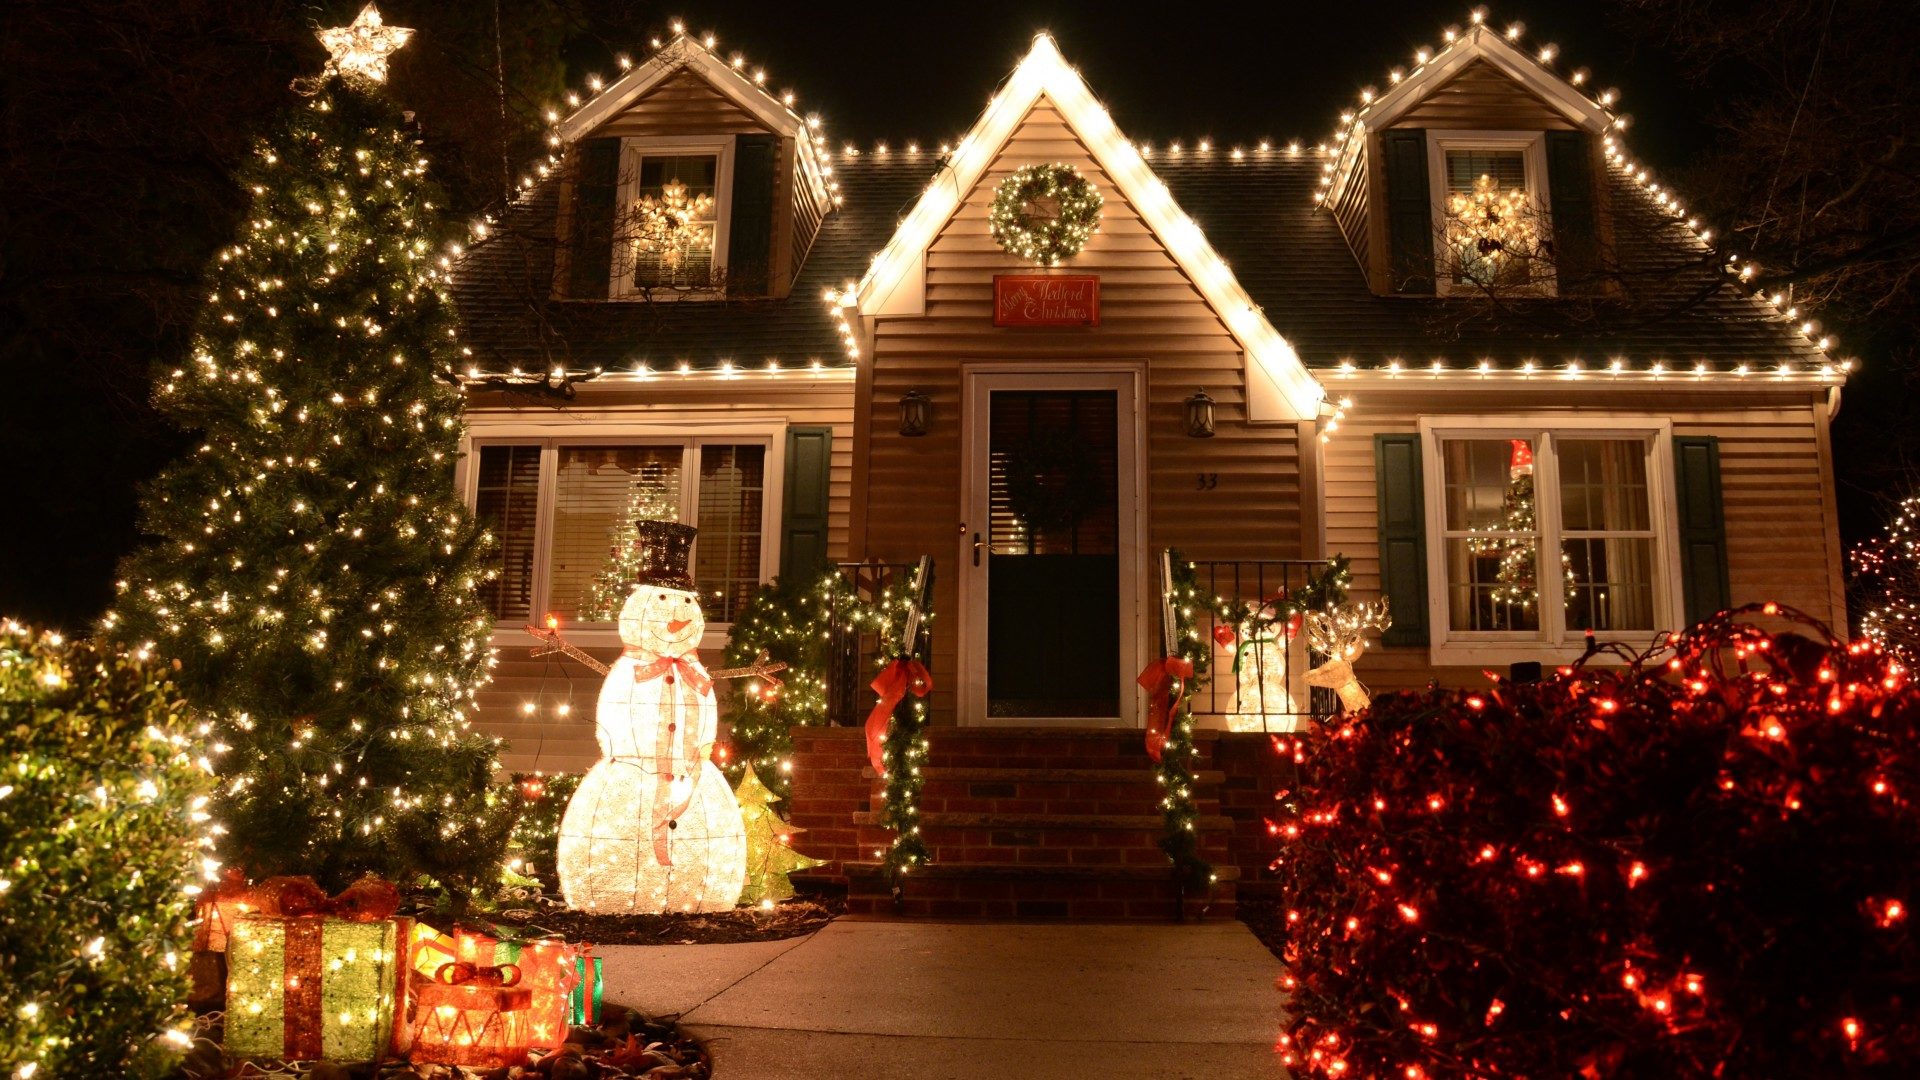 Amano troppo il Natale: casa addobbata con 24 alberi e oltre 5mila luci